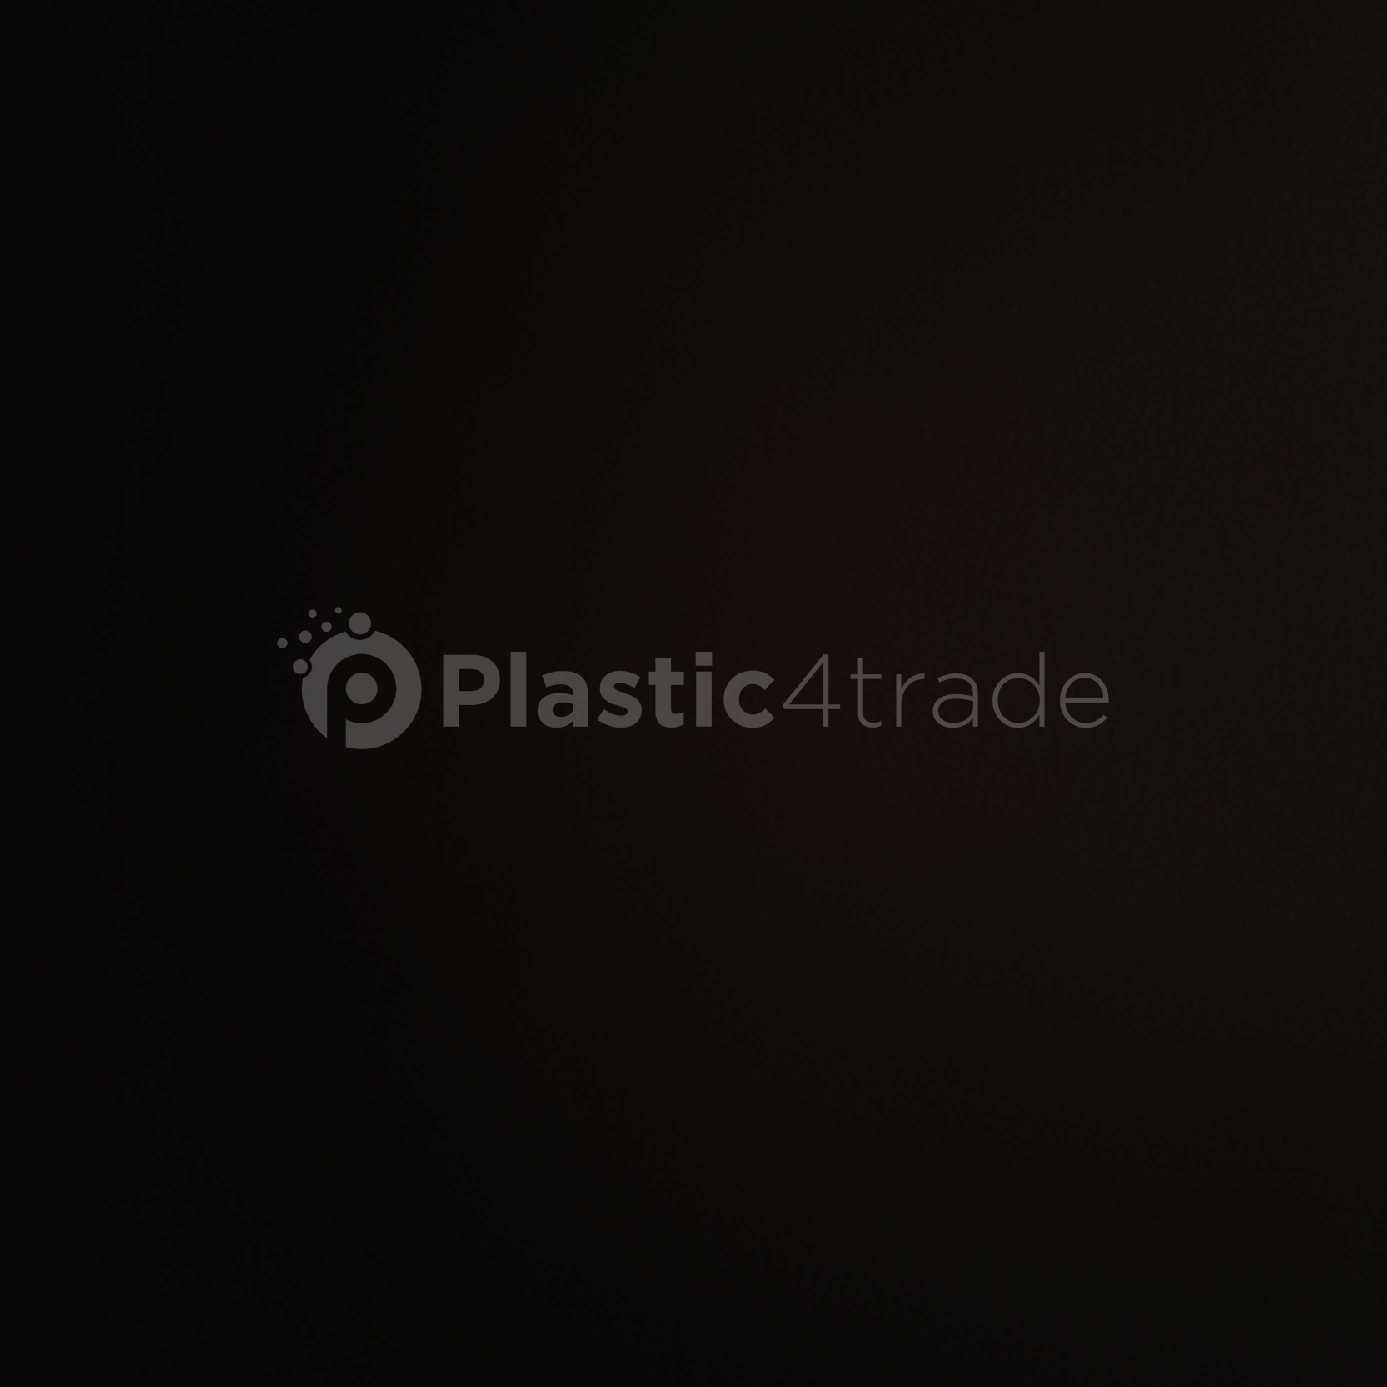 LDPE LLDPE LLDPE Reprocess Granule Blow uttar pradesh india Plastic4trade